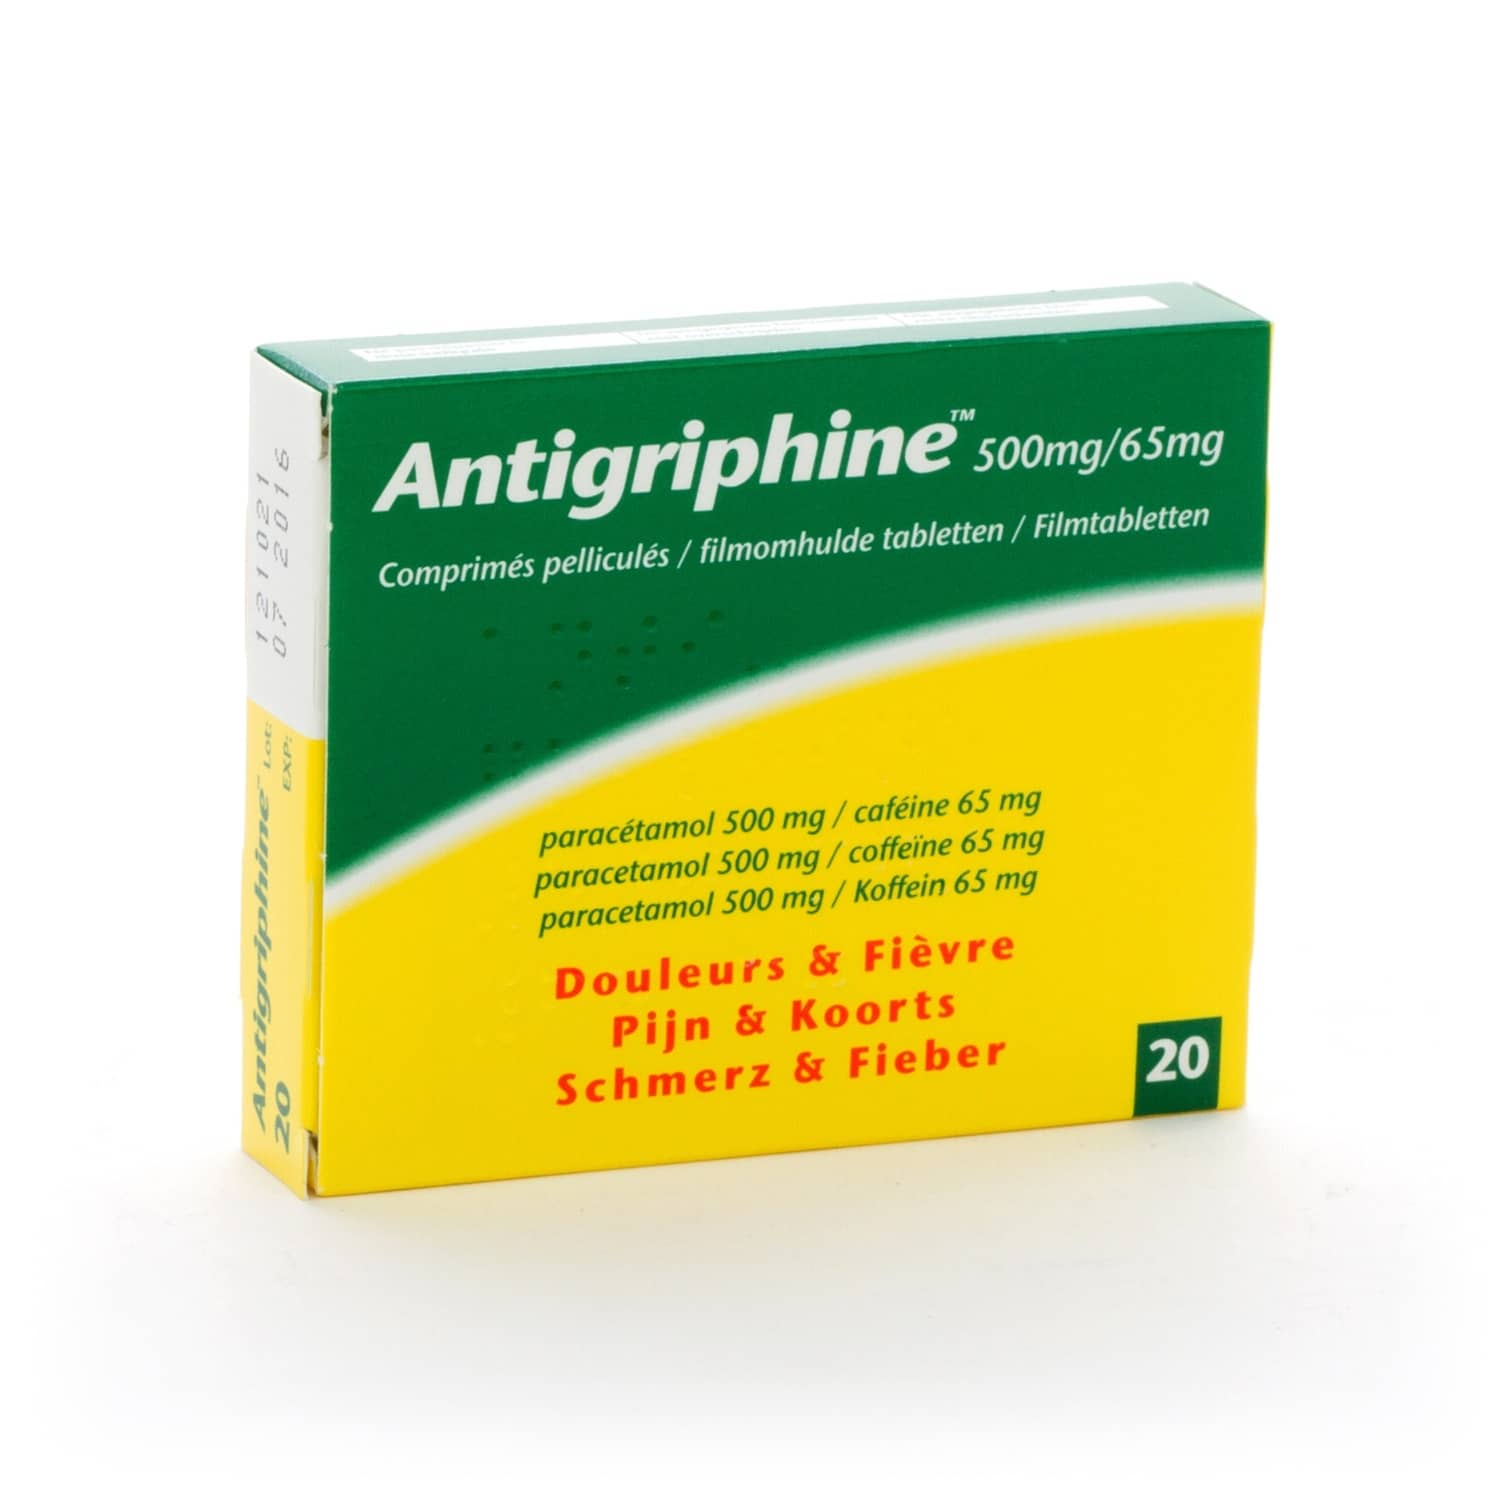 Antigriphine